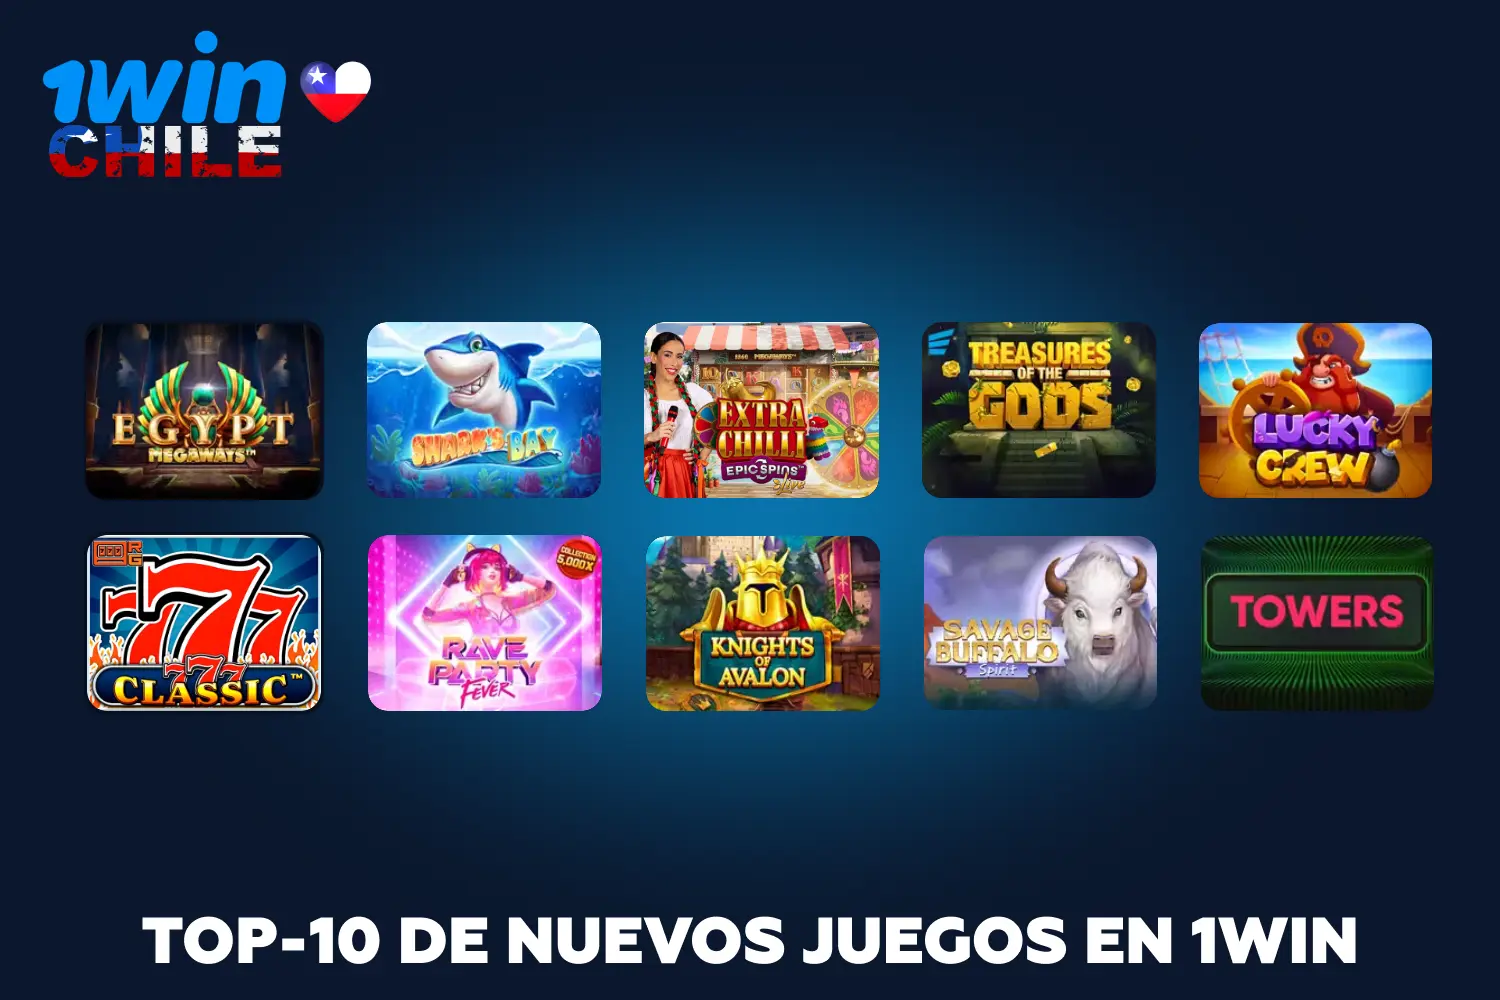 La colección 1win se actualiza a diario con juegos de alta calidad y excelentes gráficos que seguro gustarán a los jugadores de Chile